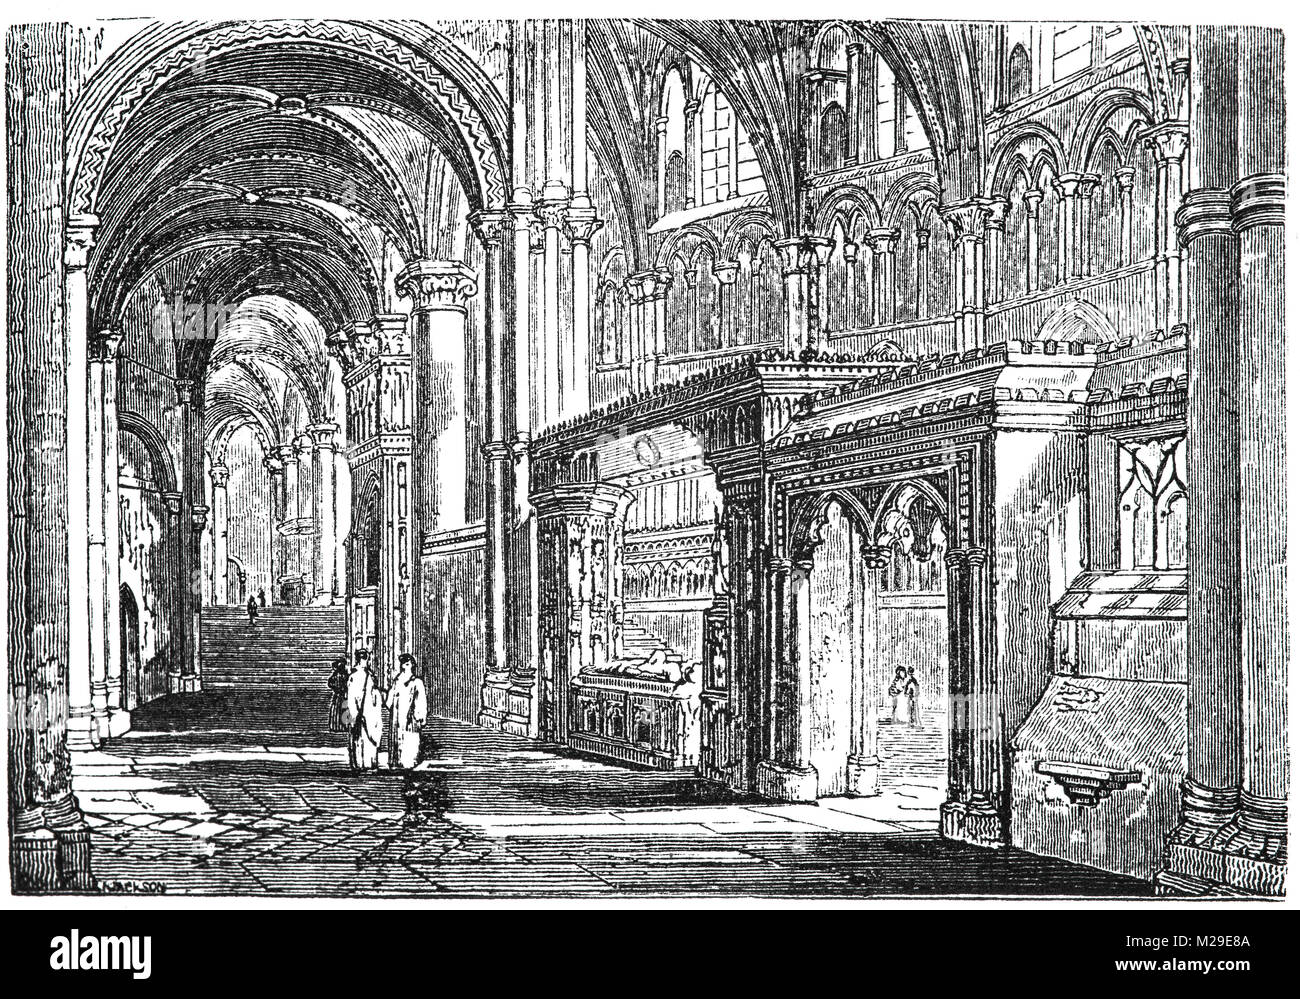 À l'intérieur de la Cathédrale de Canterbury à Canterbury, Kent, Angleterre. Elle a été fondée en 597, et entièrement reconstruit de 1070 à 1077. L'extrémité a été considérablement agrandie au début du douzième siècle, et en grande partie reconstruite dans le style gothique après un incendie en 1174. Banque D'Images